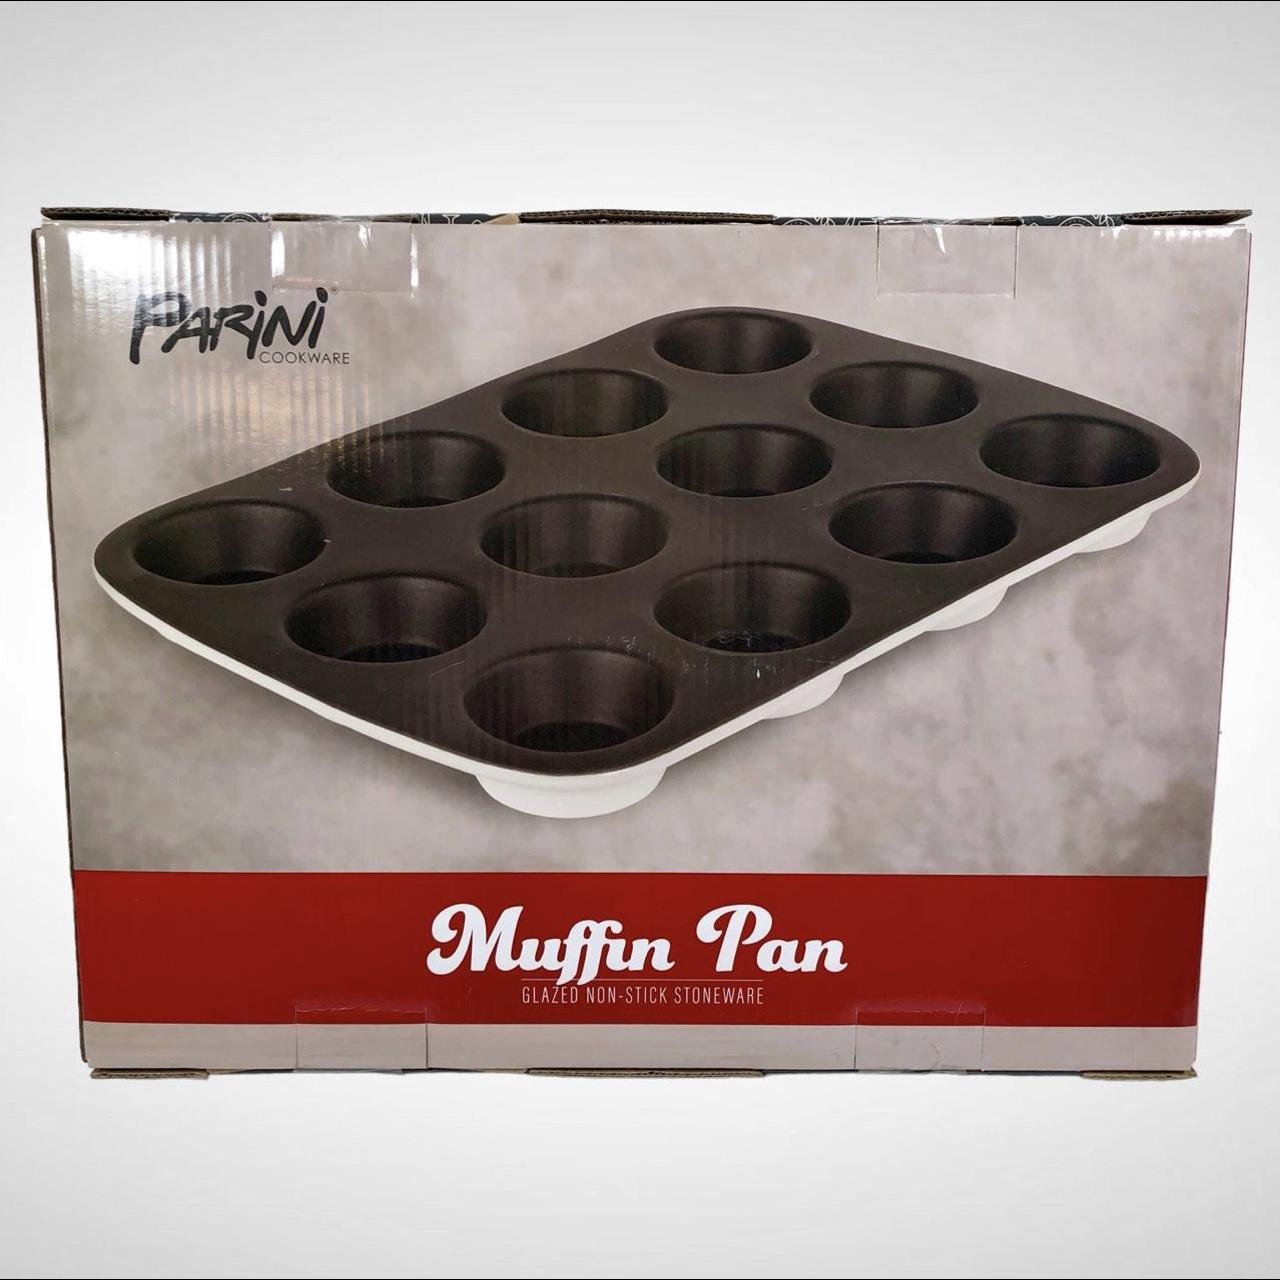 Parini 12 Cup Muffin Pan Glazed Non-Stick Stoneware! - Depop